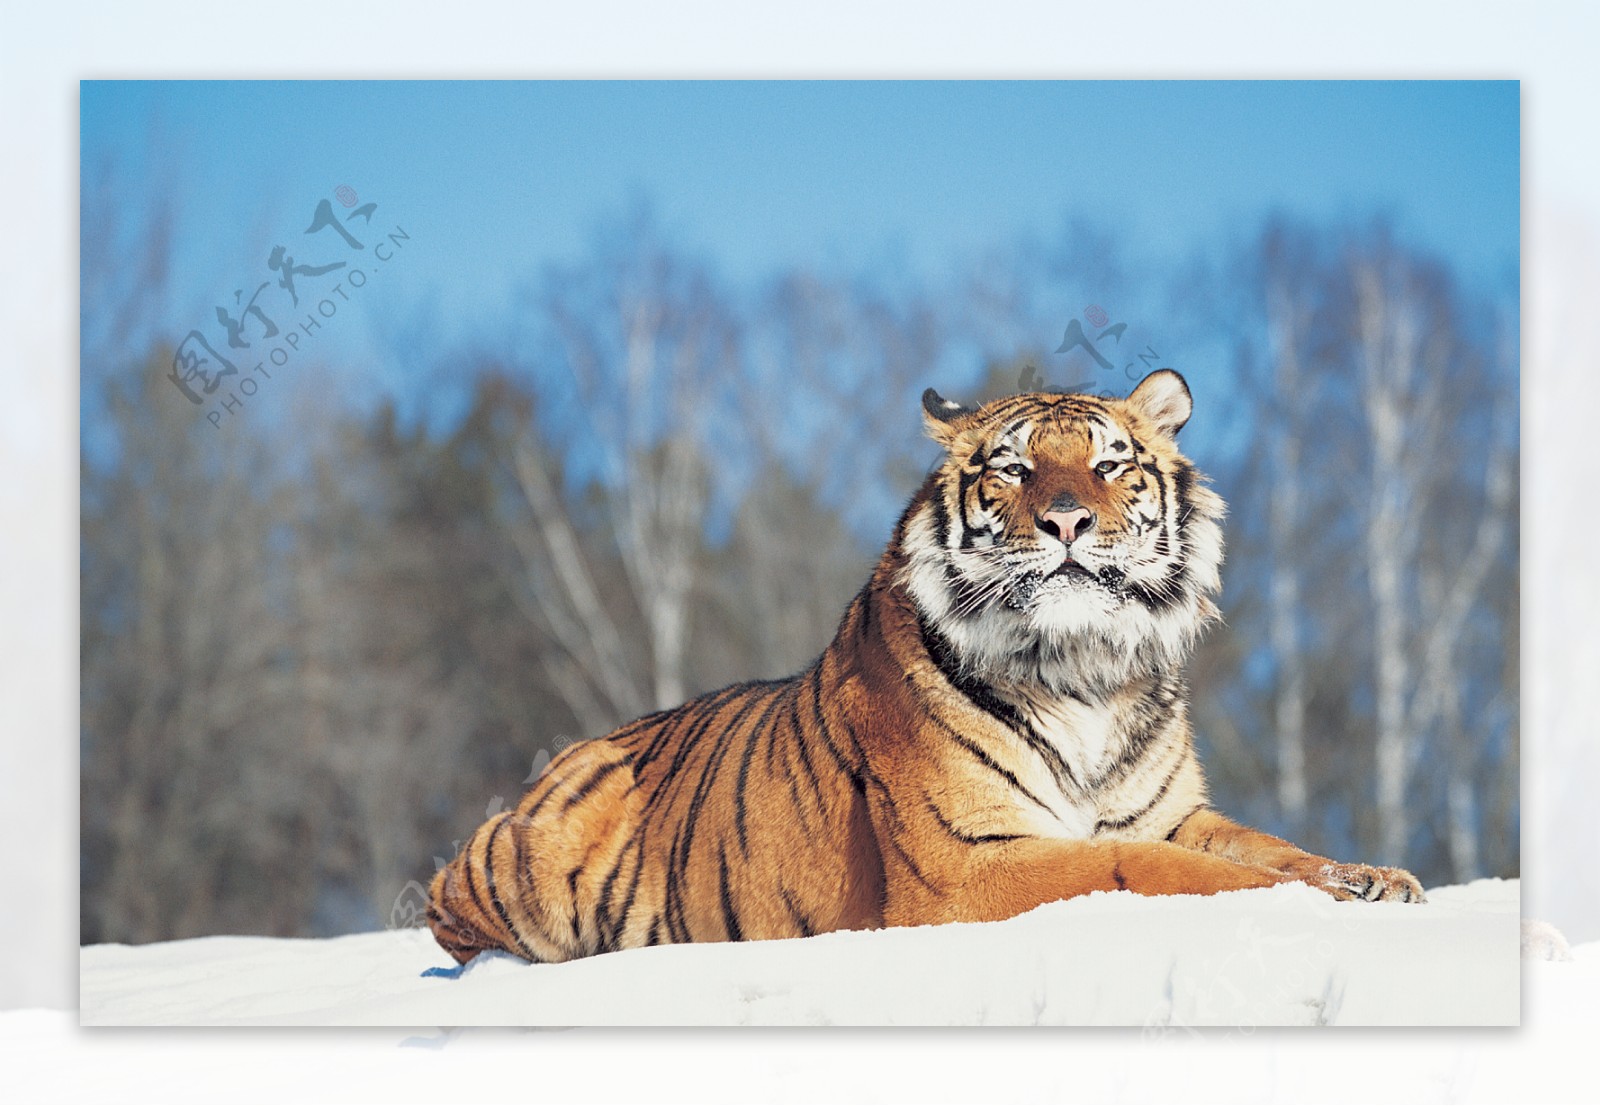 趴在雪地里的老虎图片